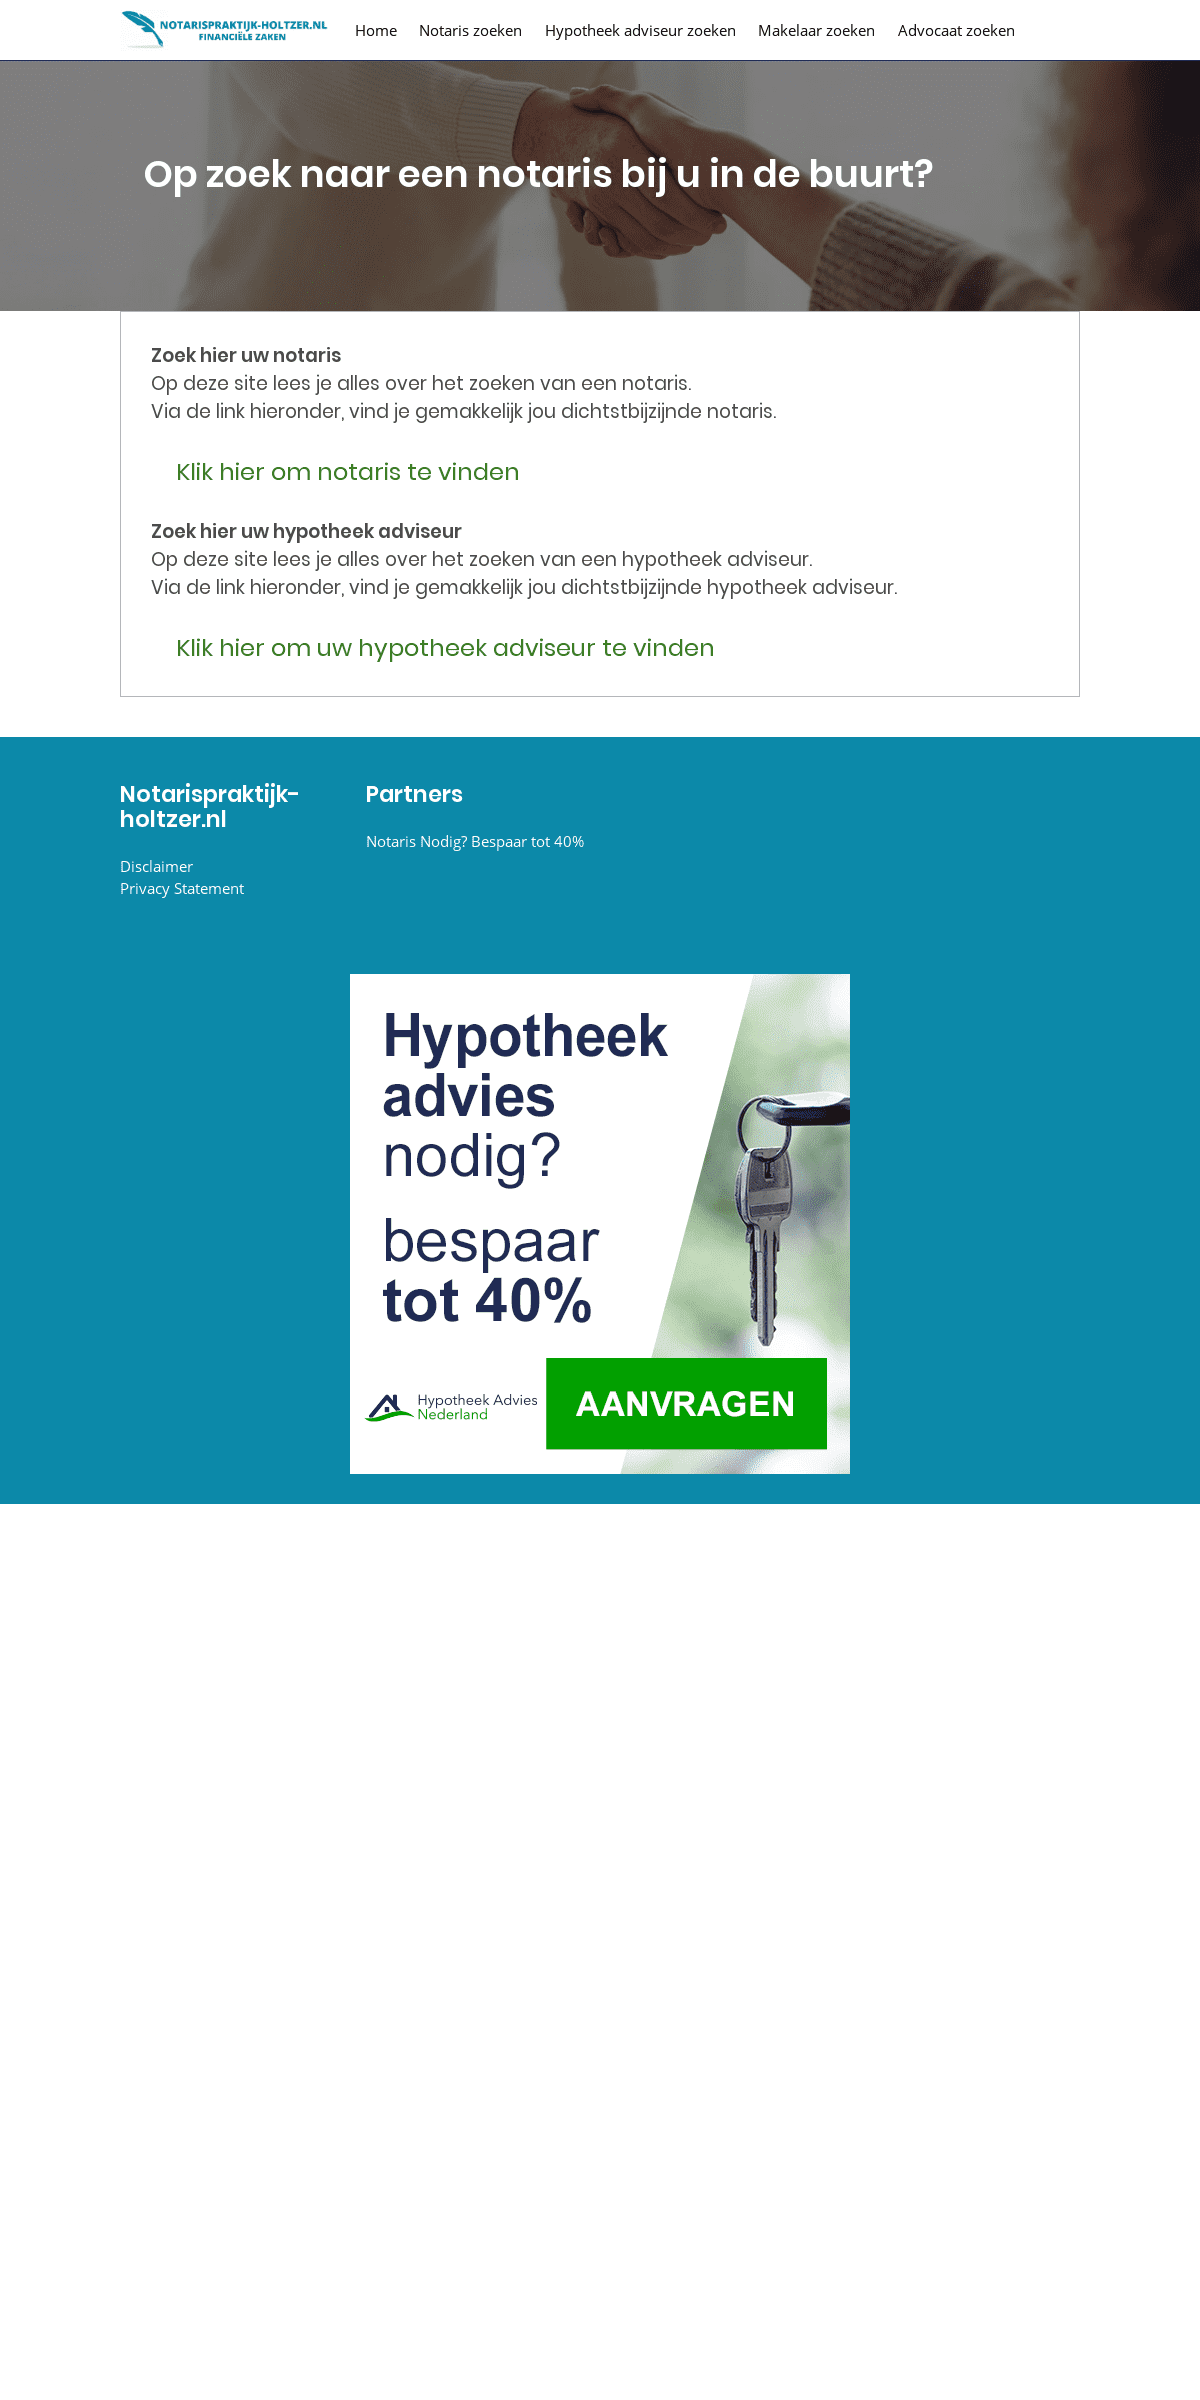 A complete backup of notarispraktijk-holtzer.nl